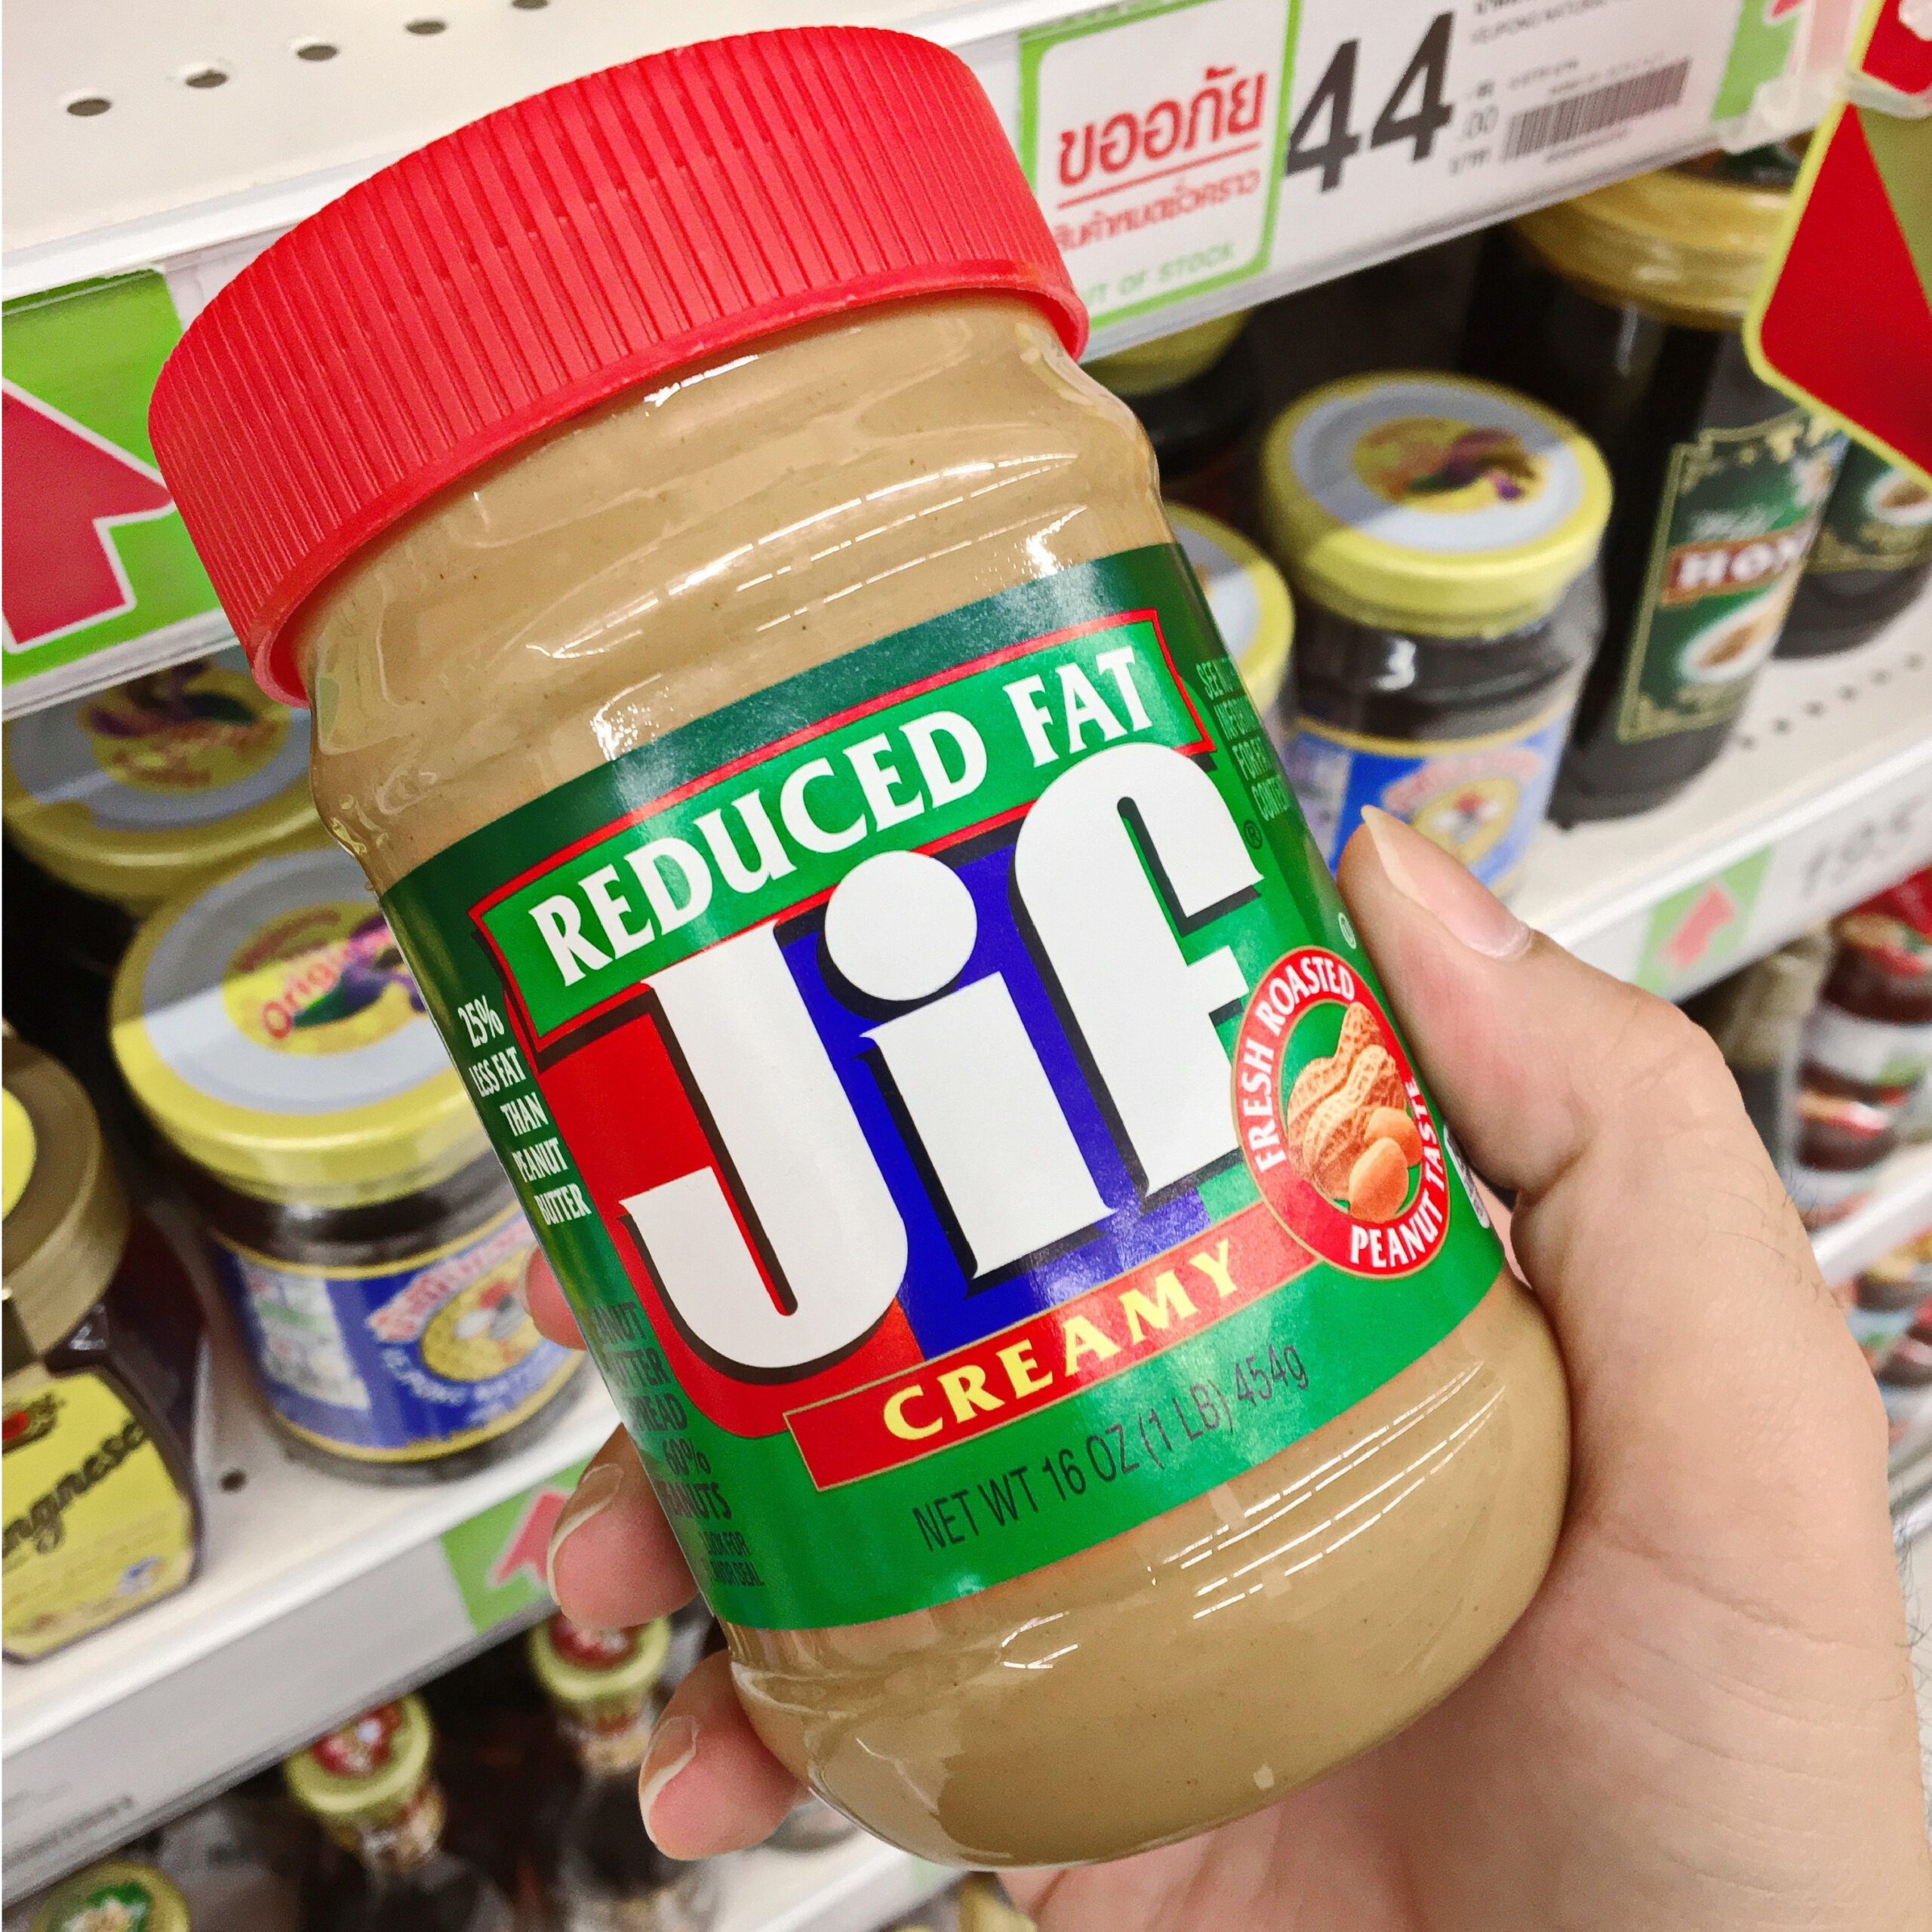 reduced fat jif peanut butter